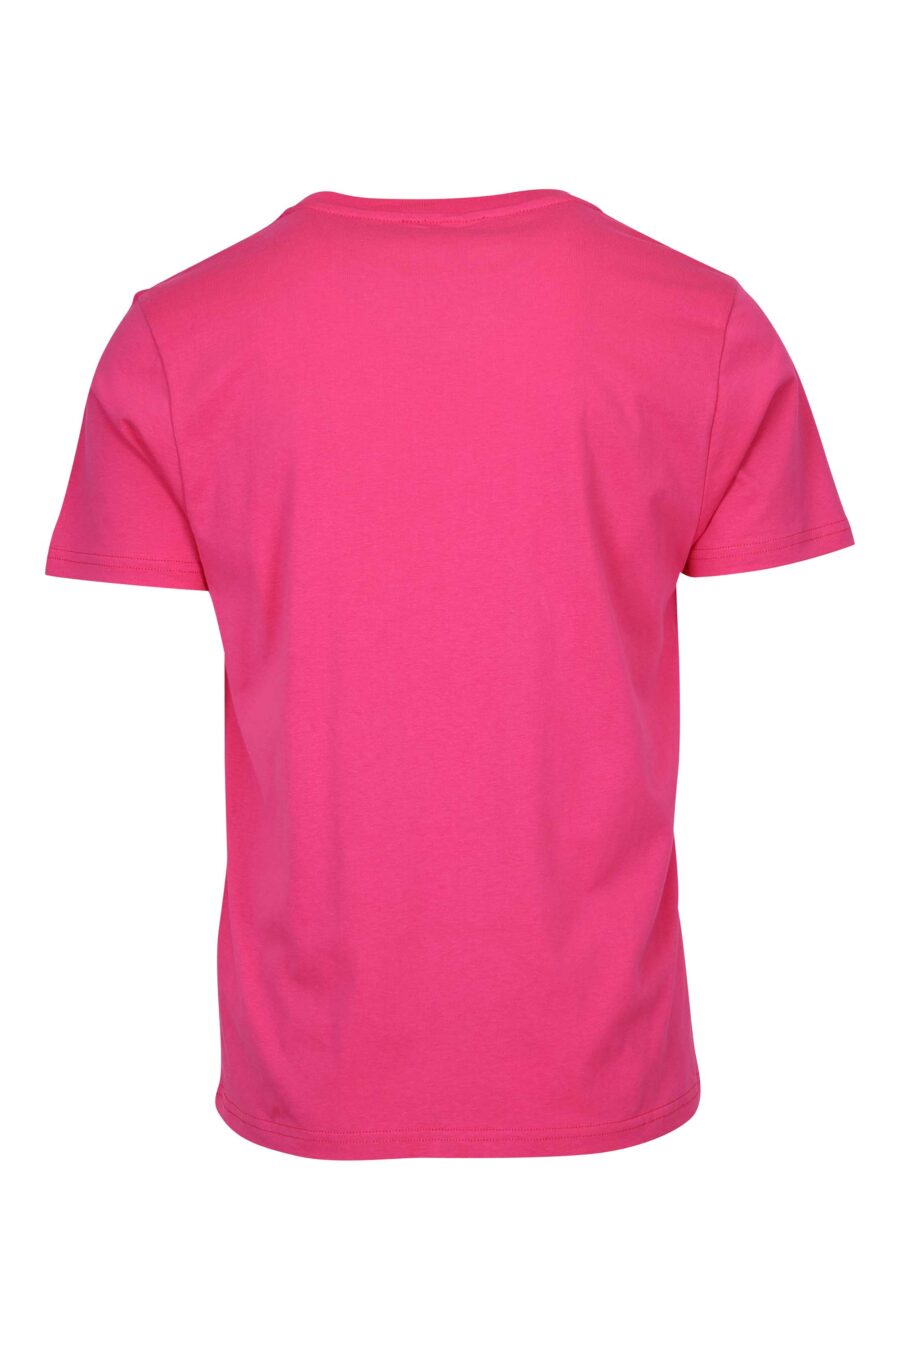 Camiseta fucsia con logo monocromático de goma en hombros - 667113671888 1